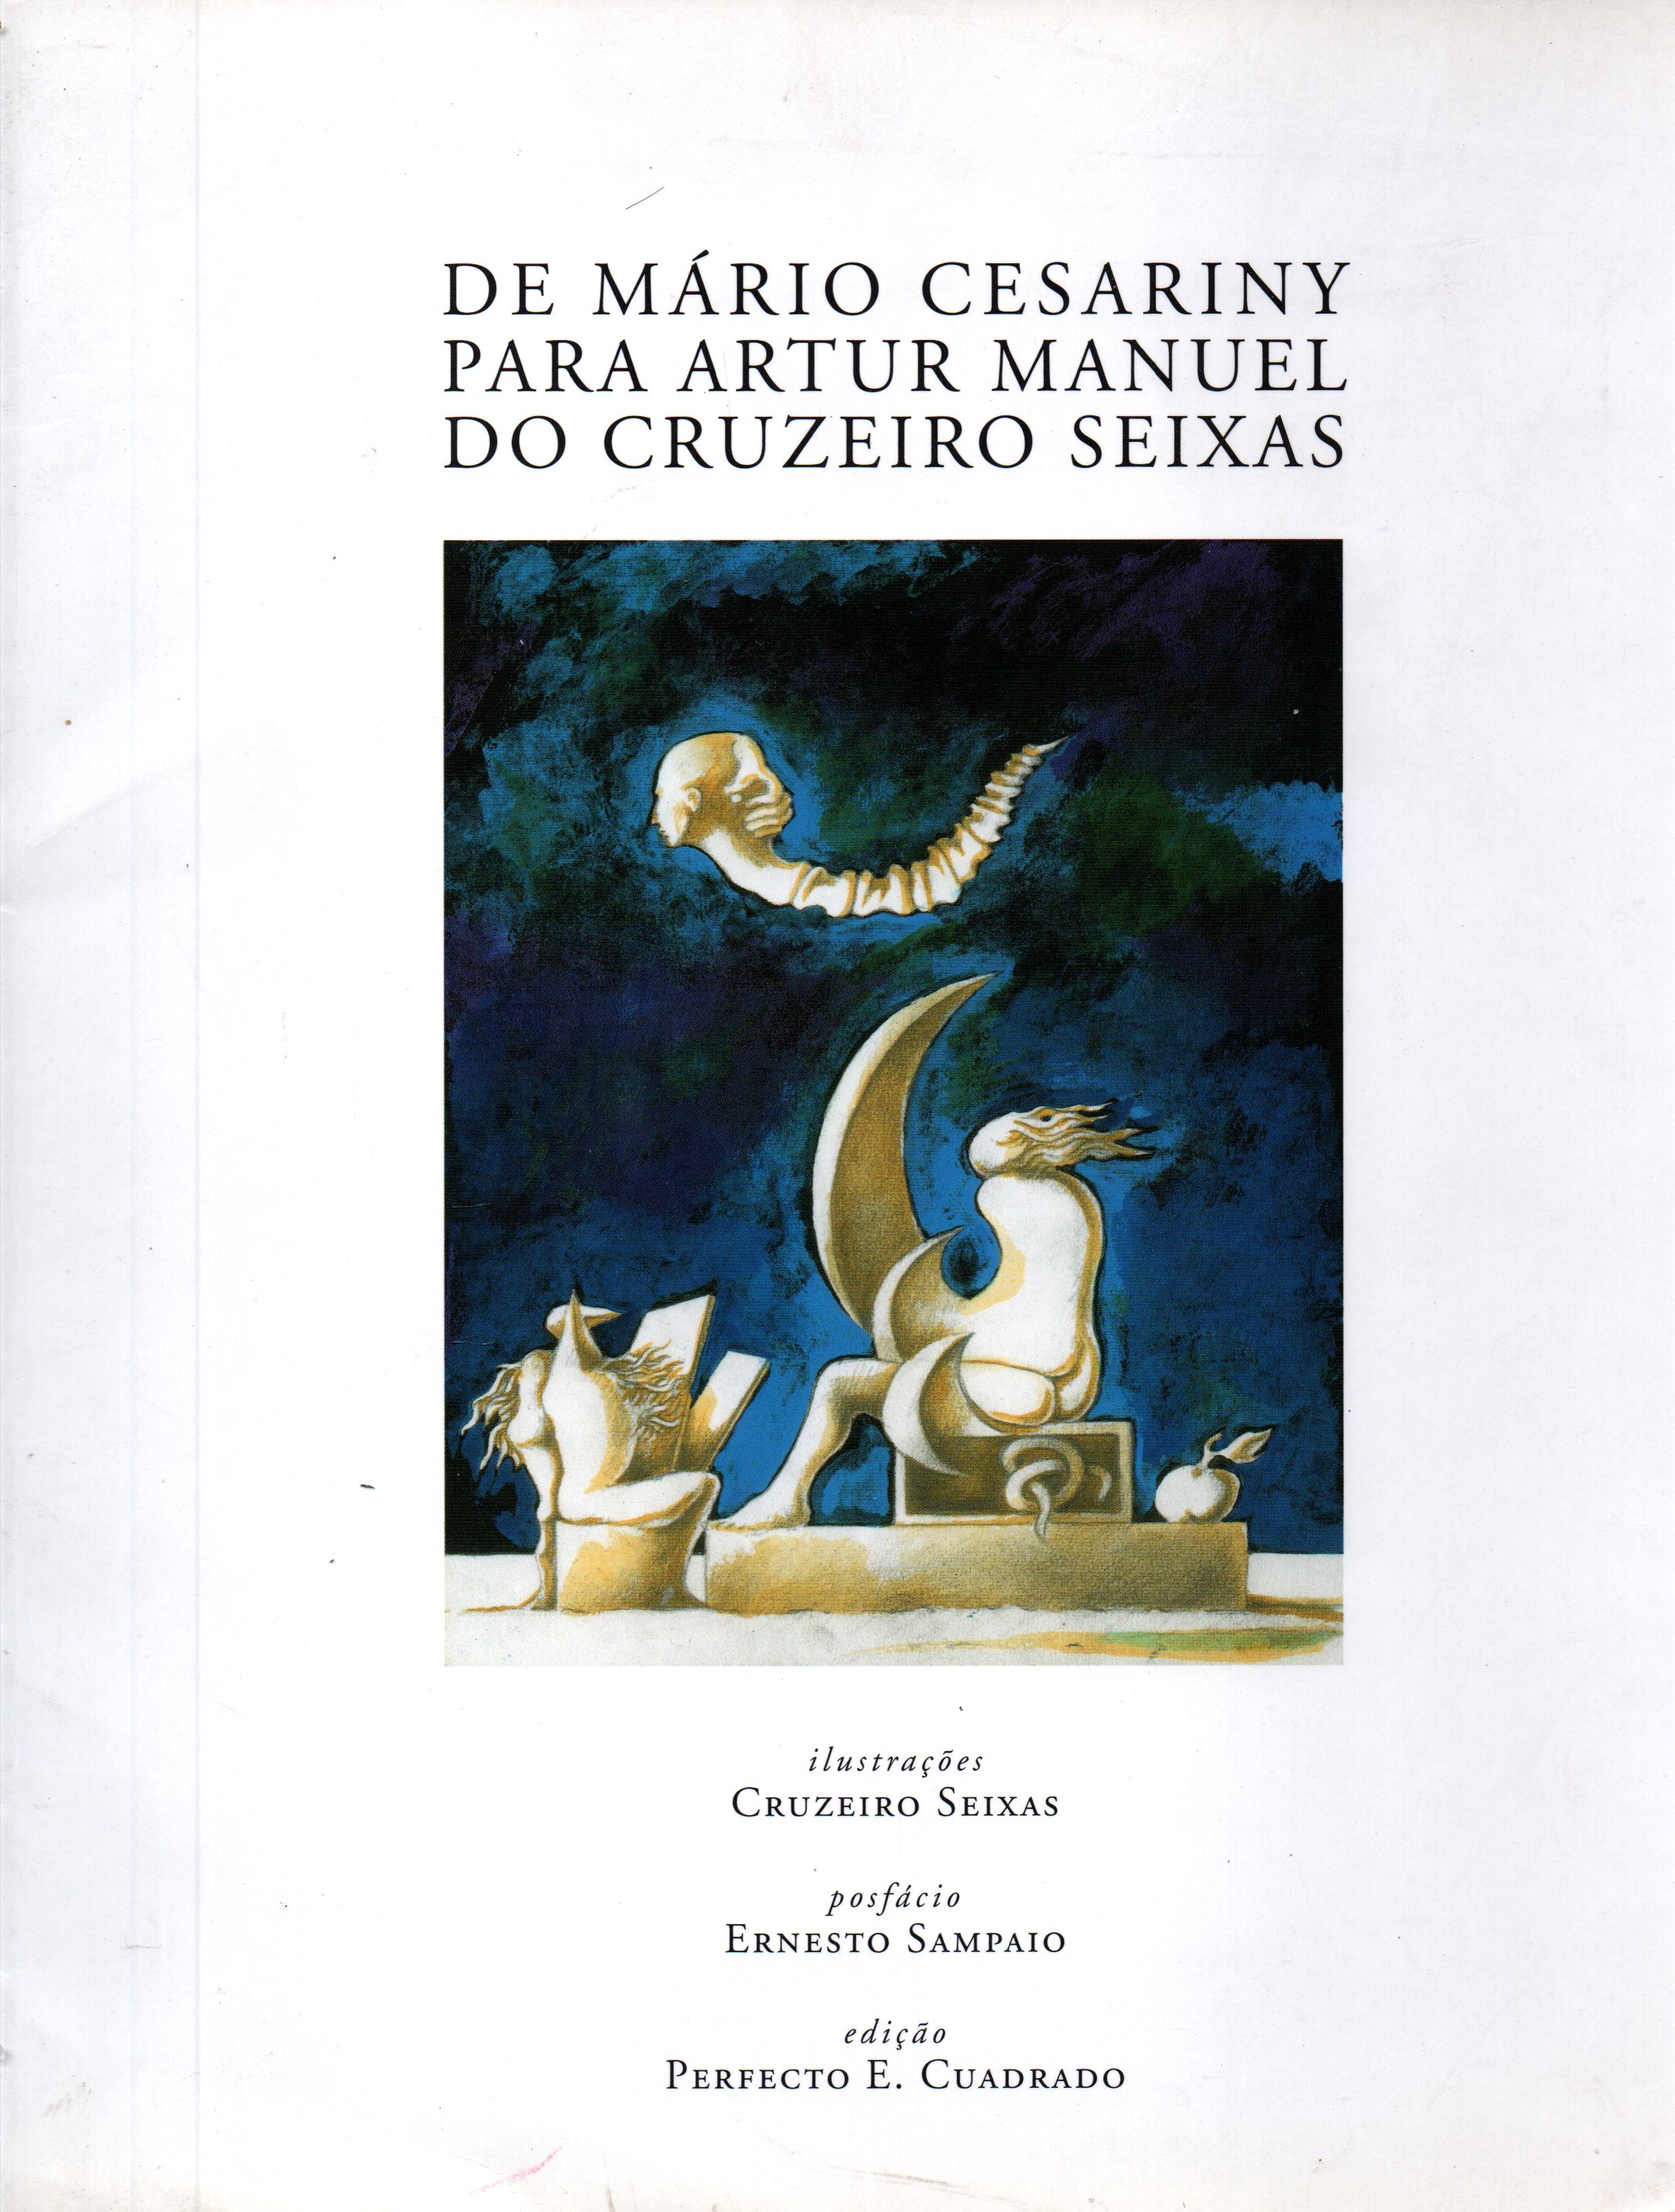 De Mario Cesariny para Artur Manuel do Cruzeiro Seixas - Postfacio;Ernesto Sampaio-Edicao;Perfecto E. Cuadrado